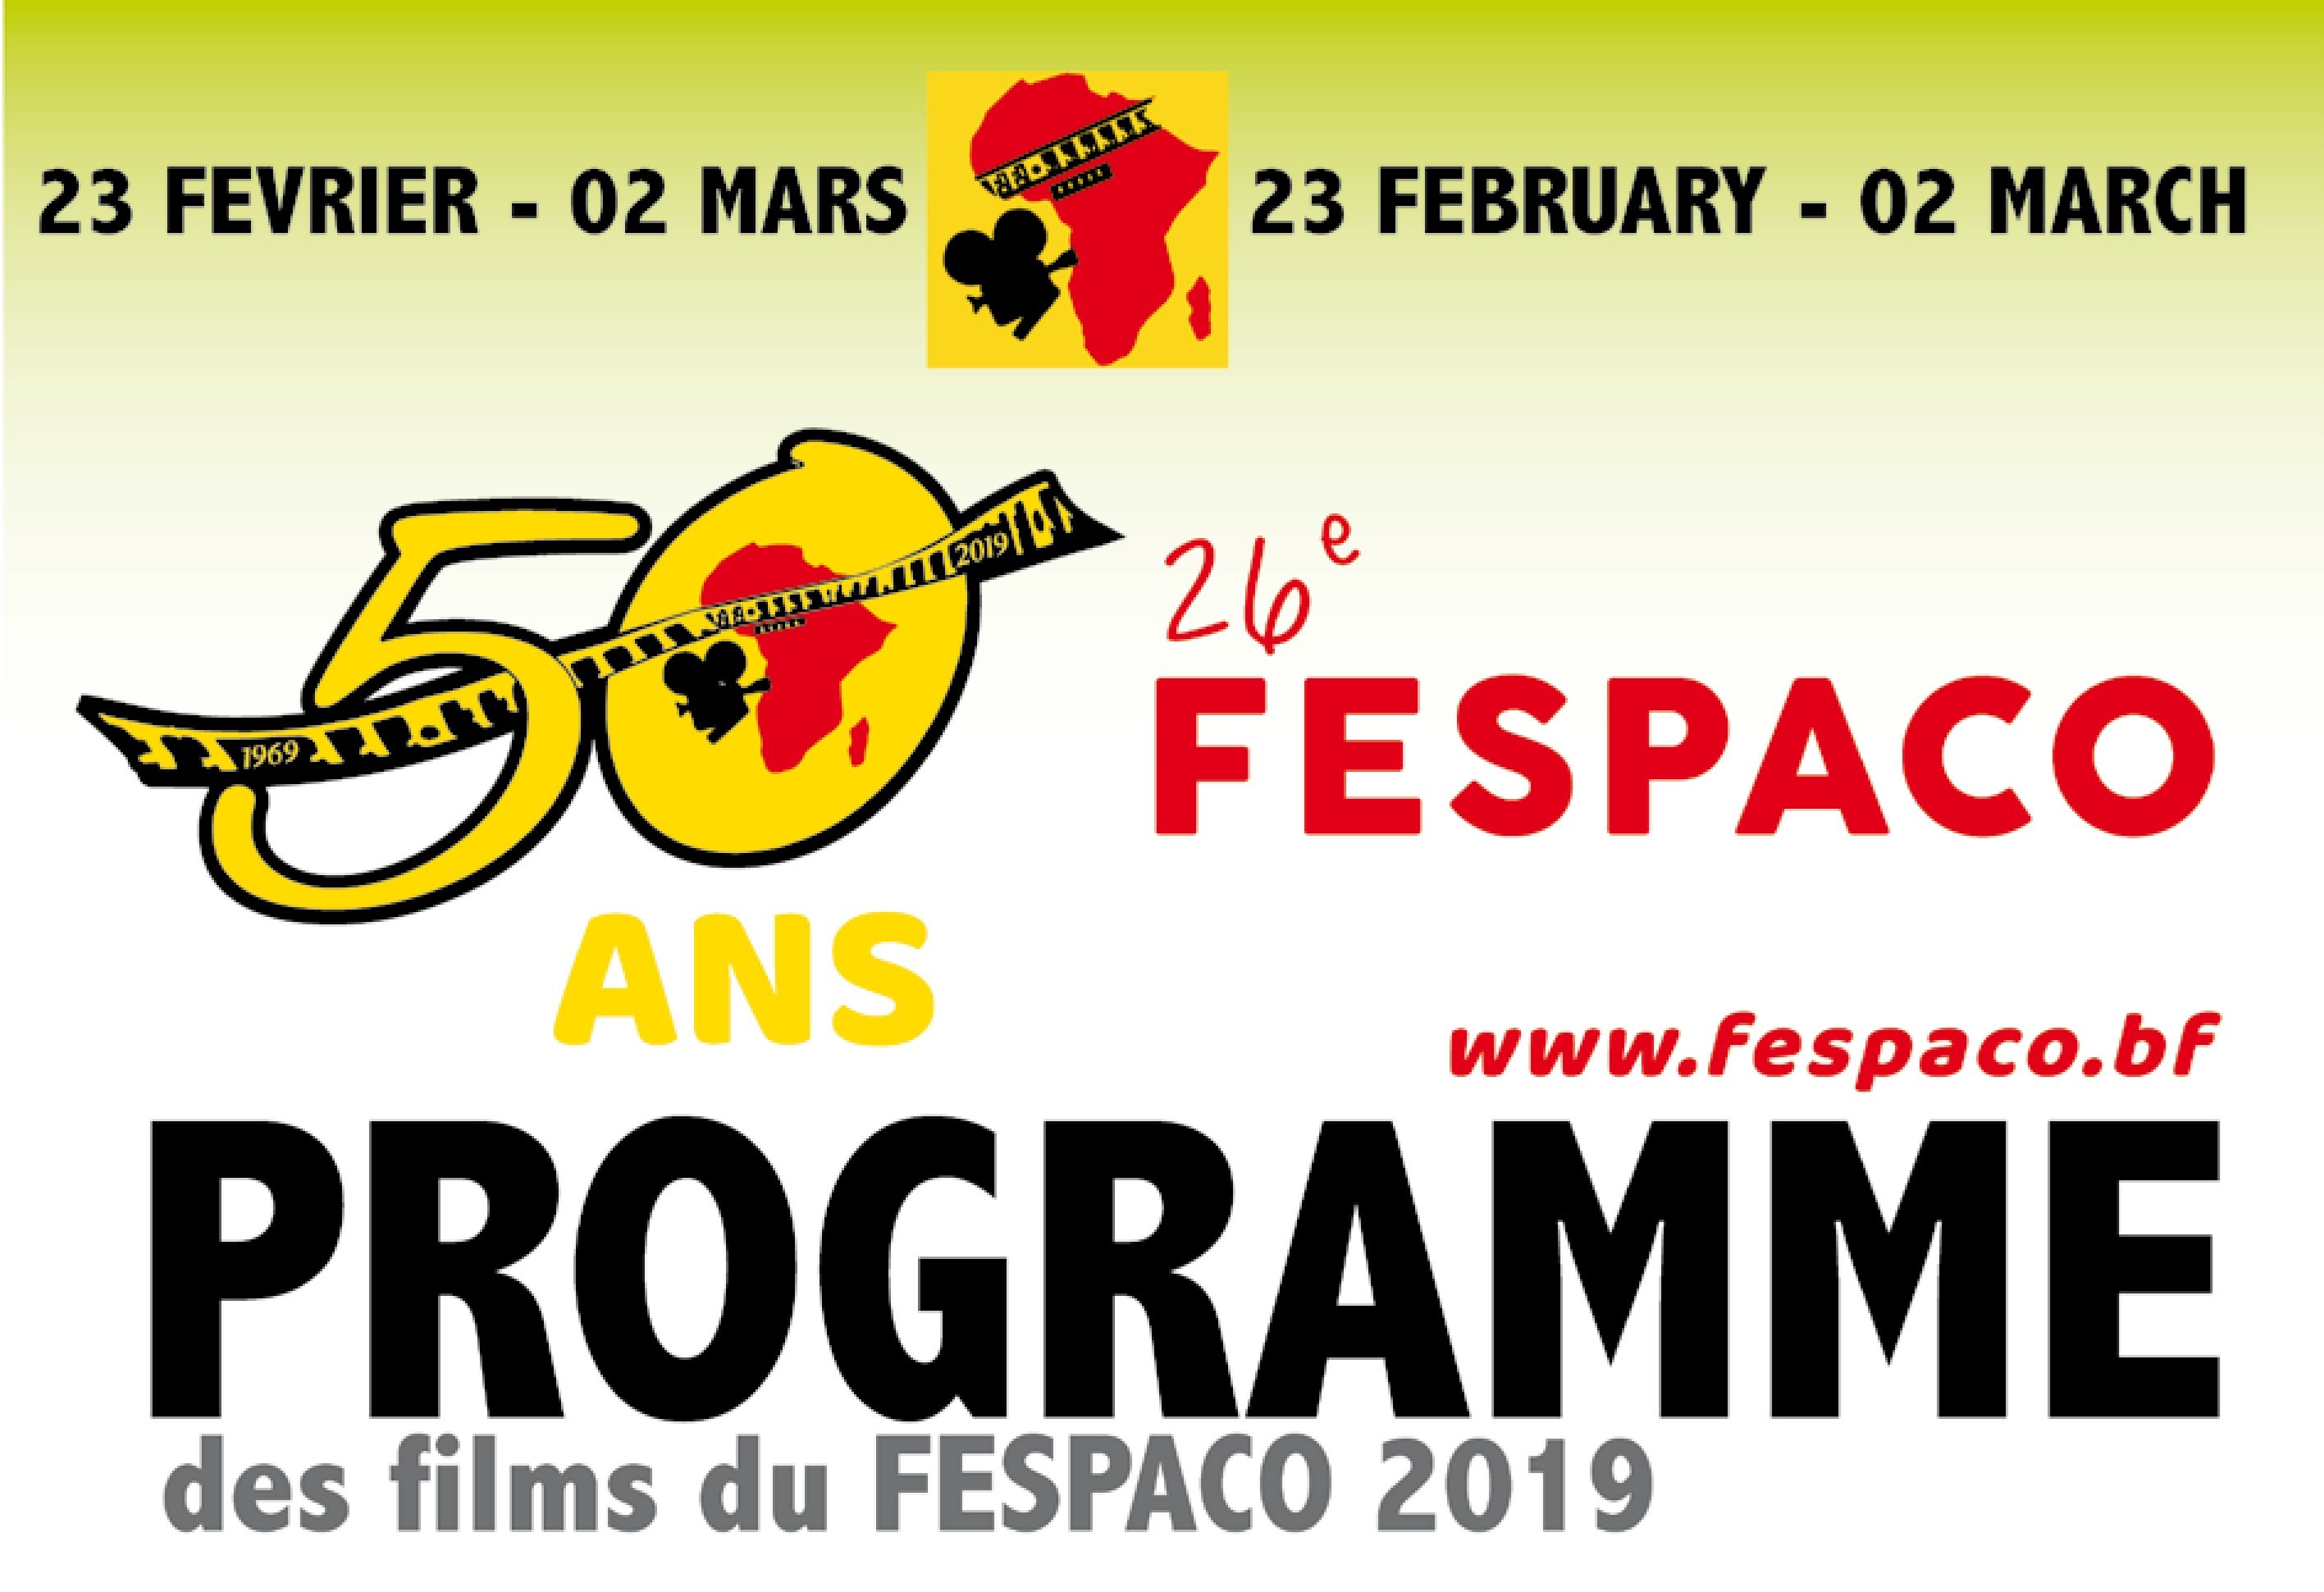 Fespaco 2019 : Programme de projection des films du lundi 25 février 2019